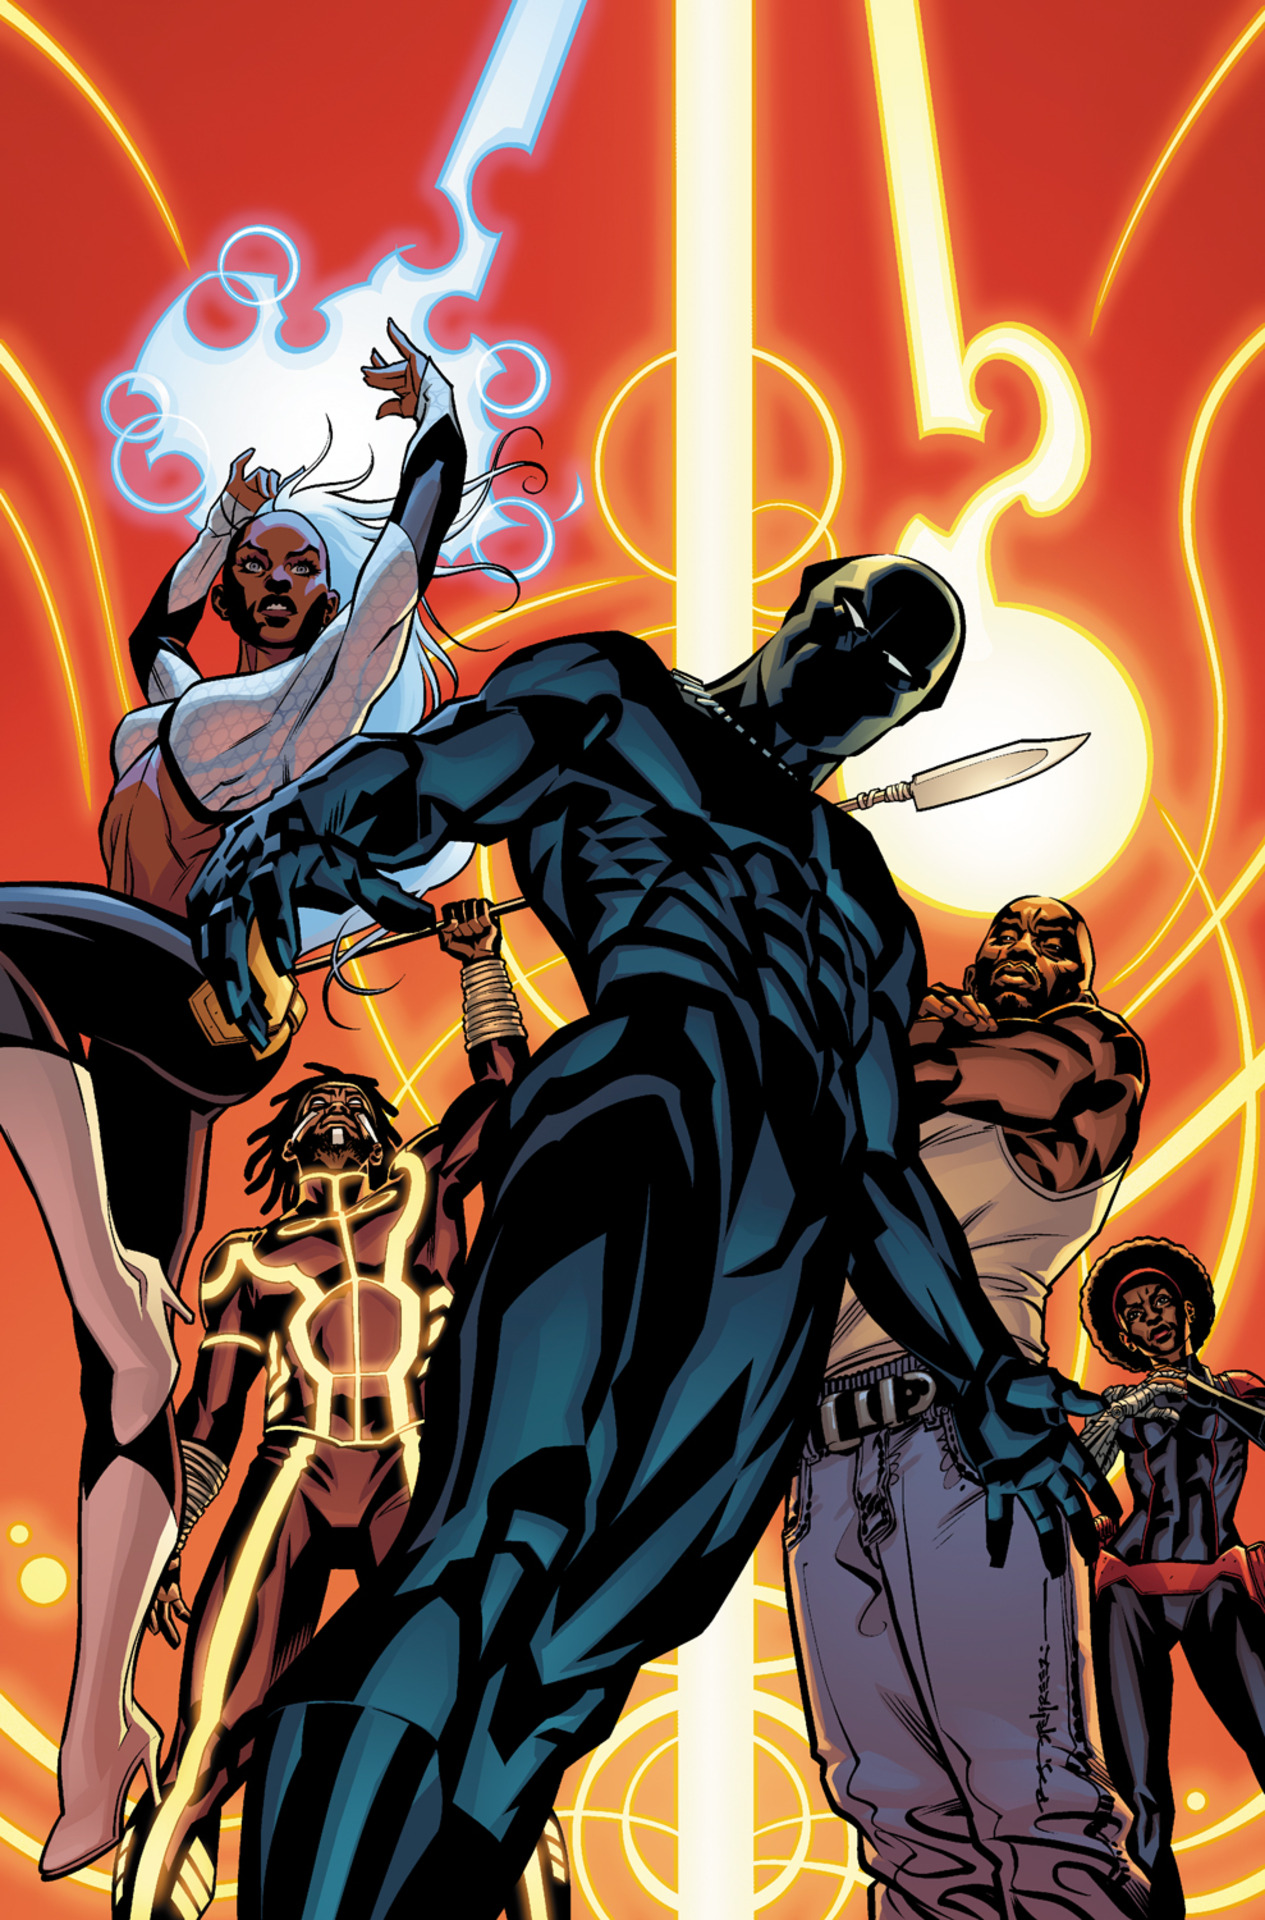 Blindfold #54 Prices, Marvel 2015 Upper Deck Vibranium